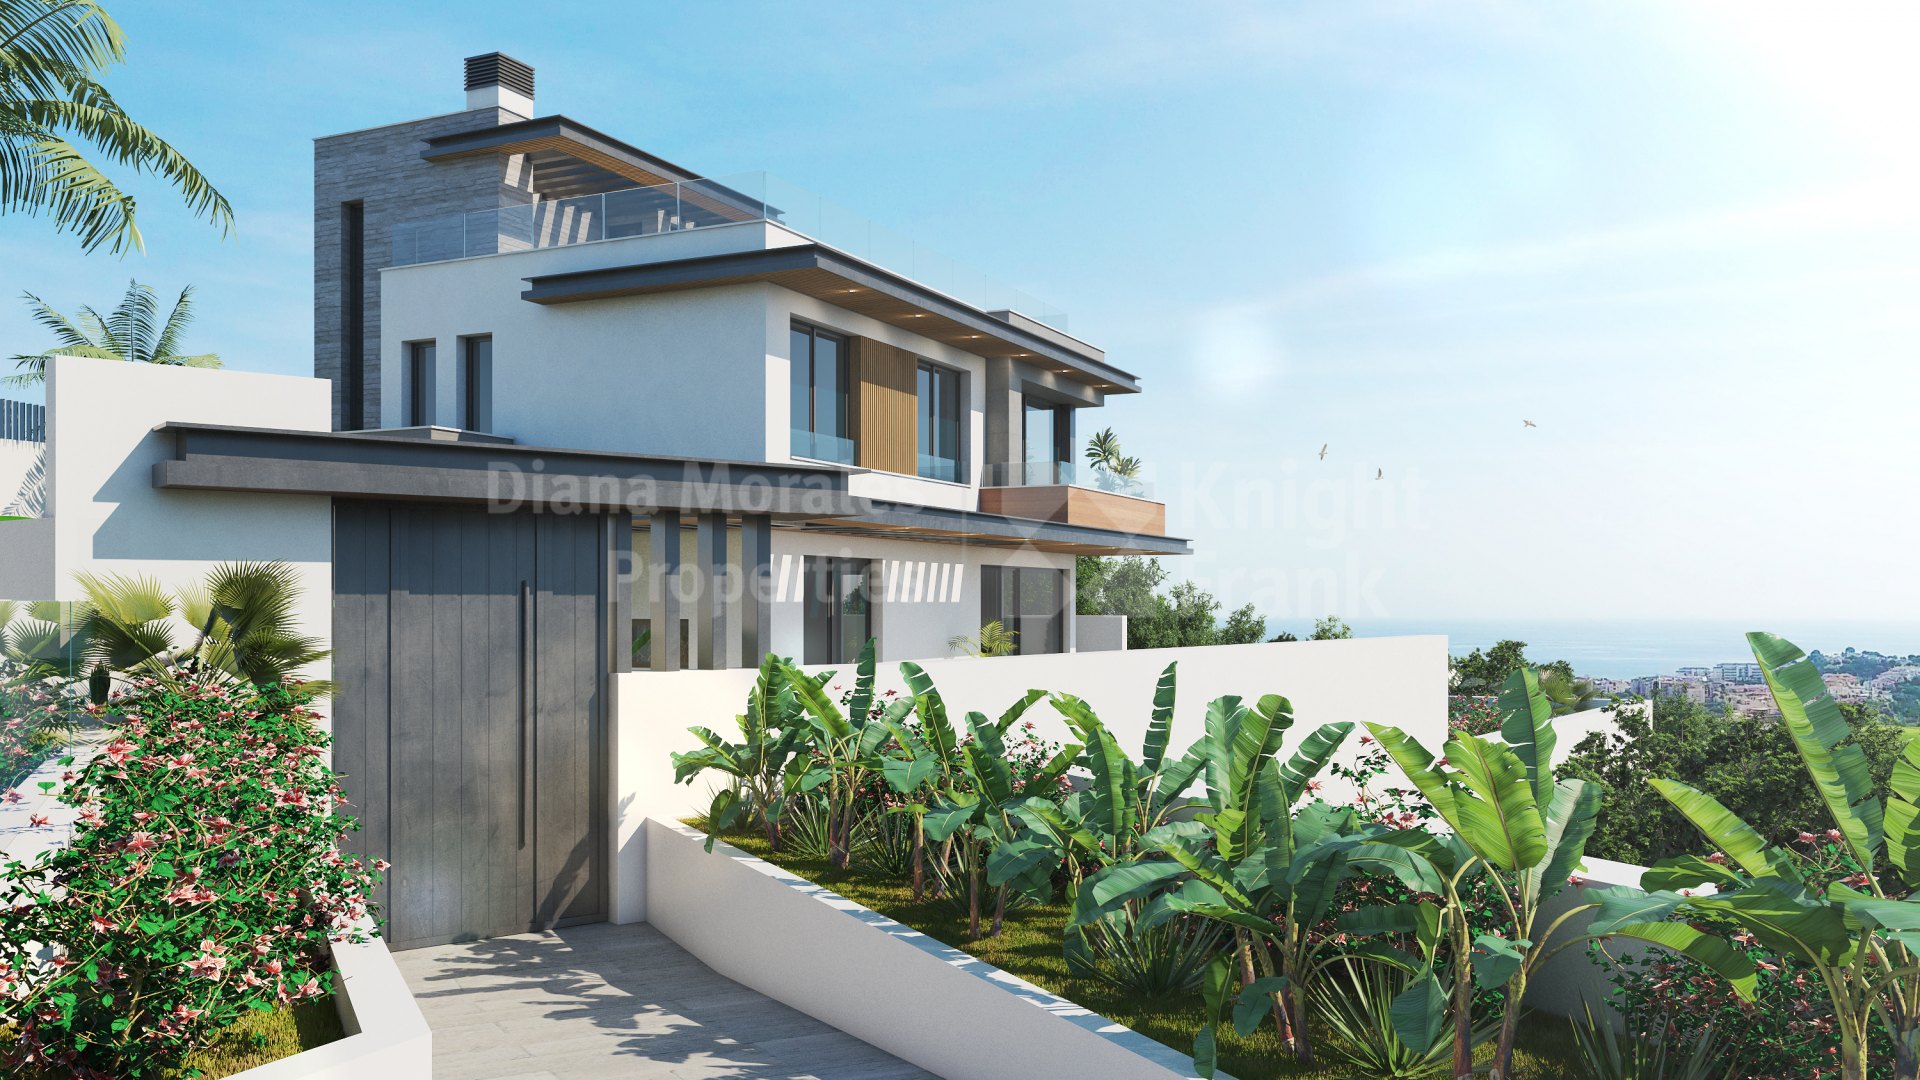 Bali Villas, 19 вилл в охраняемом поселке в Ла Кала де Михас